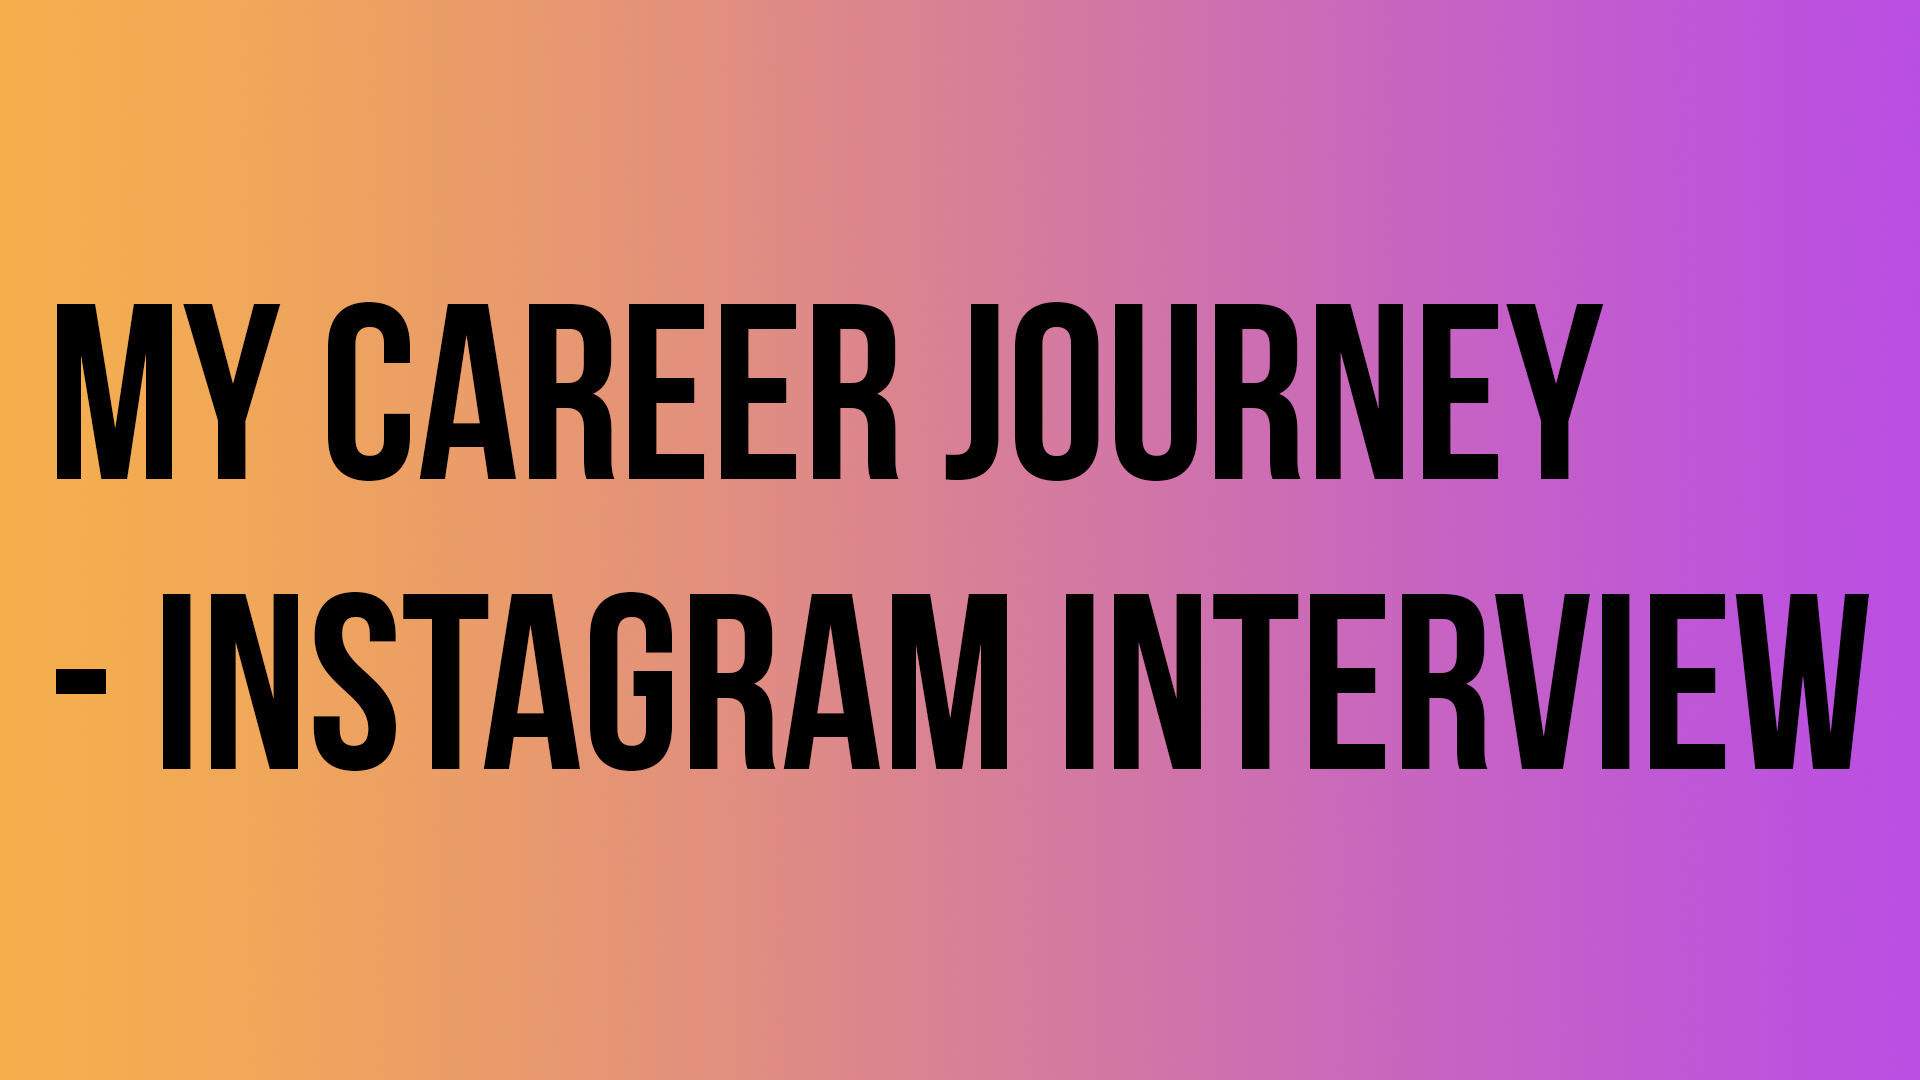 My career journey - Instagram Interview